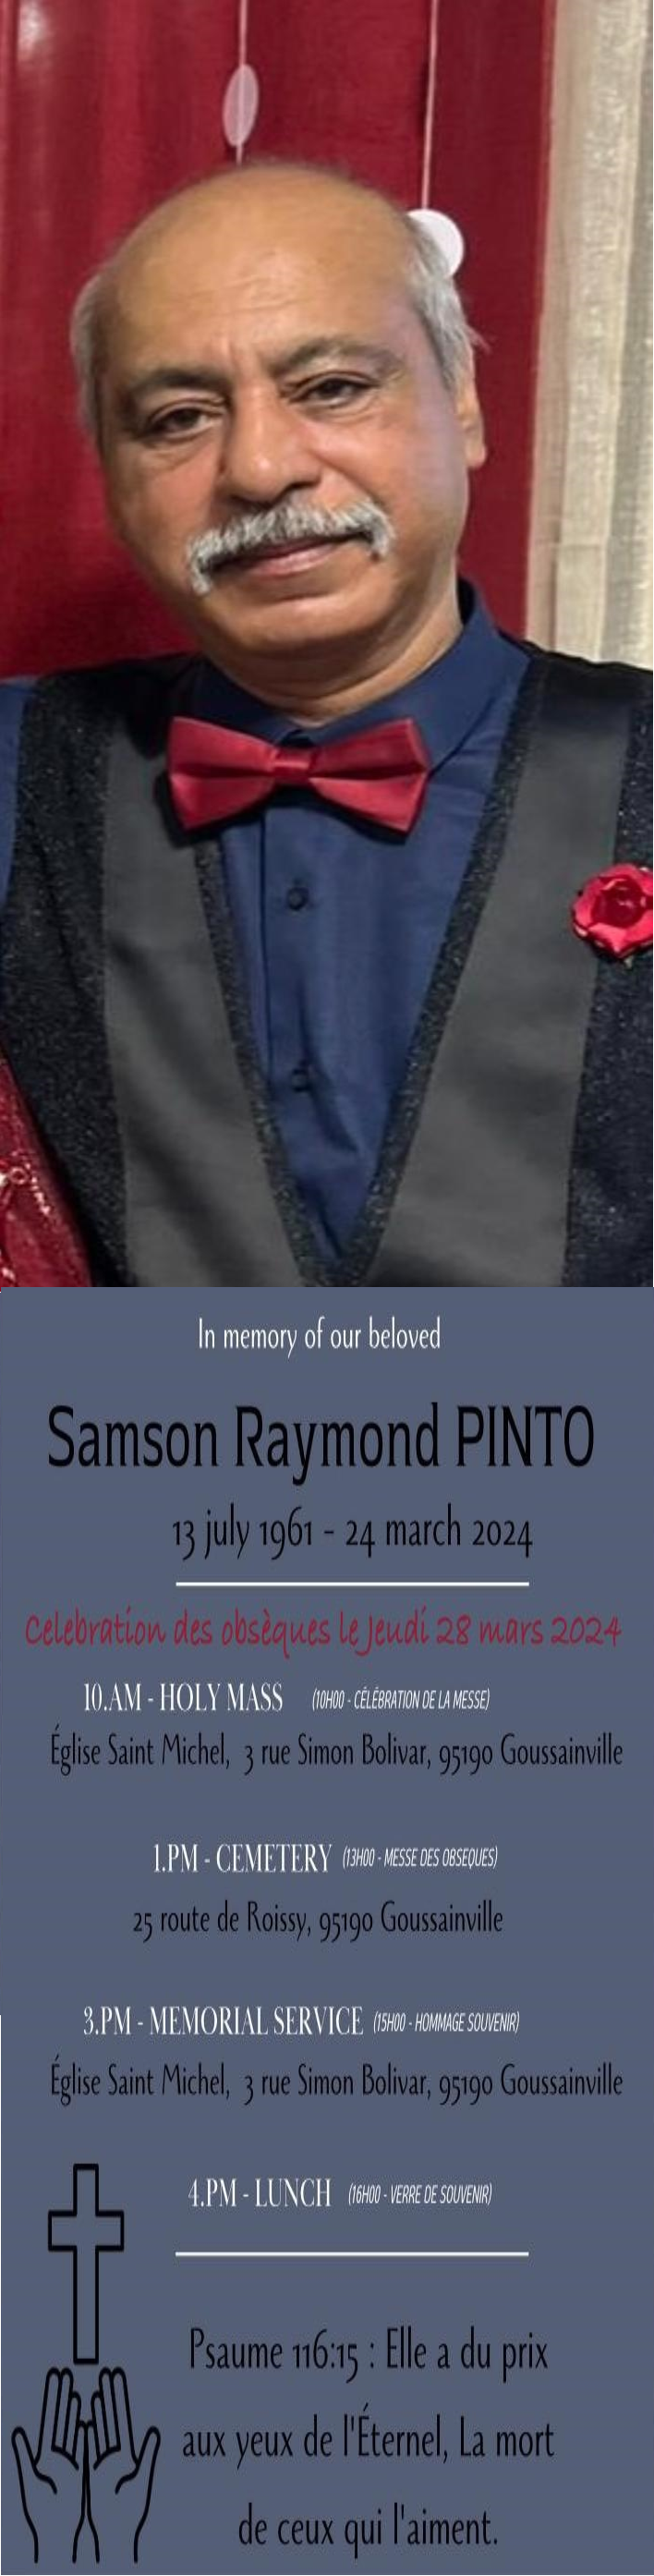 Samson PINTO